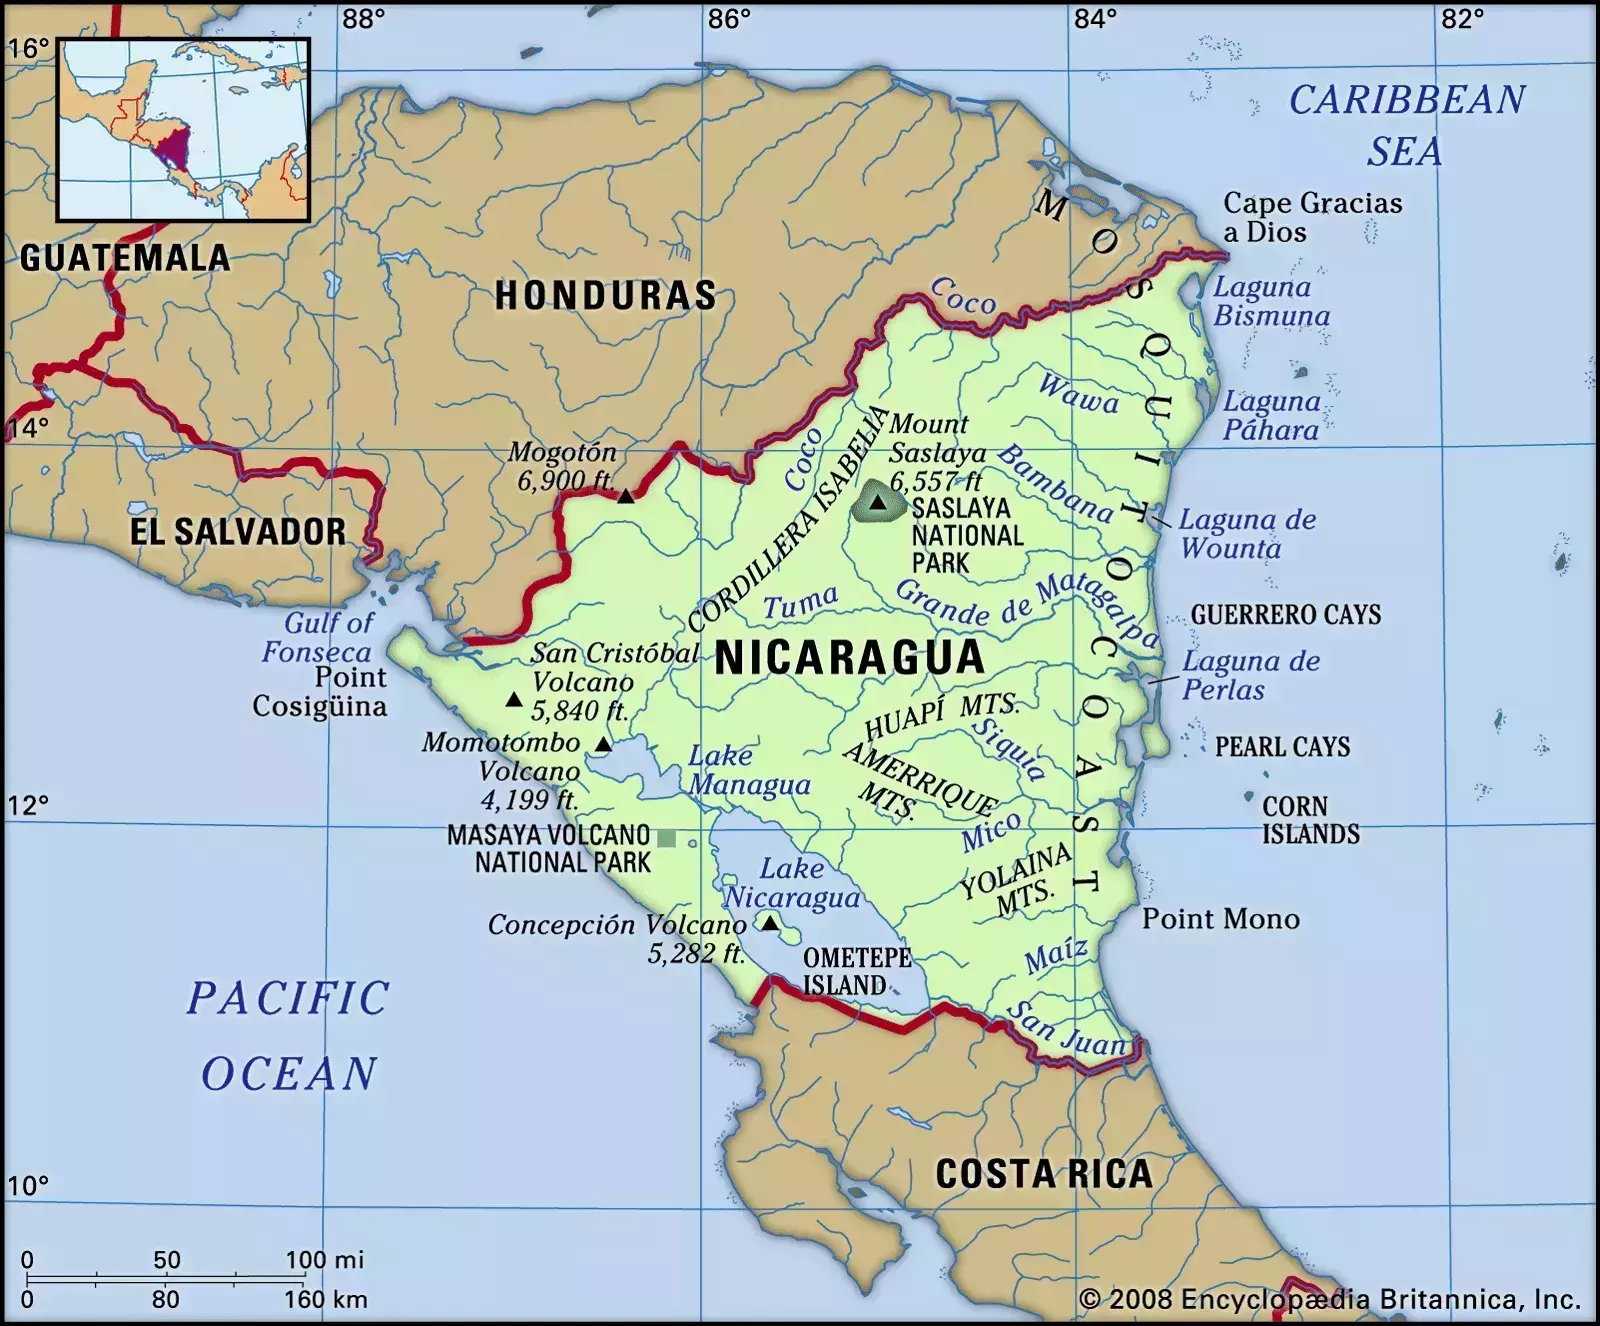 मध्य अमेरिका के देश निकारागुआ ने अमेरिकी राजदूत को आने से कर दिया मना